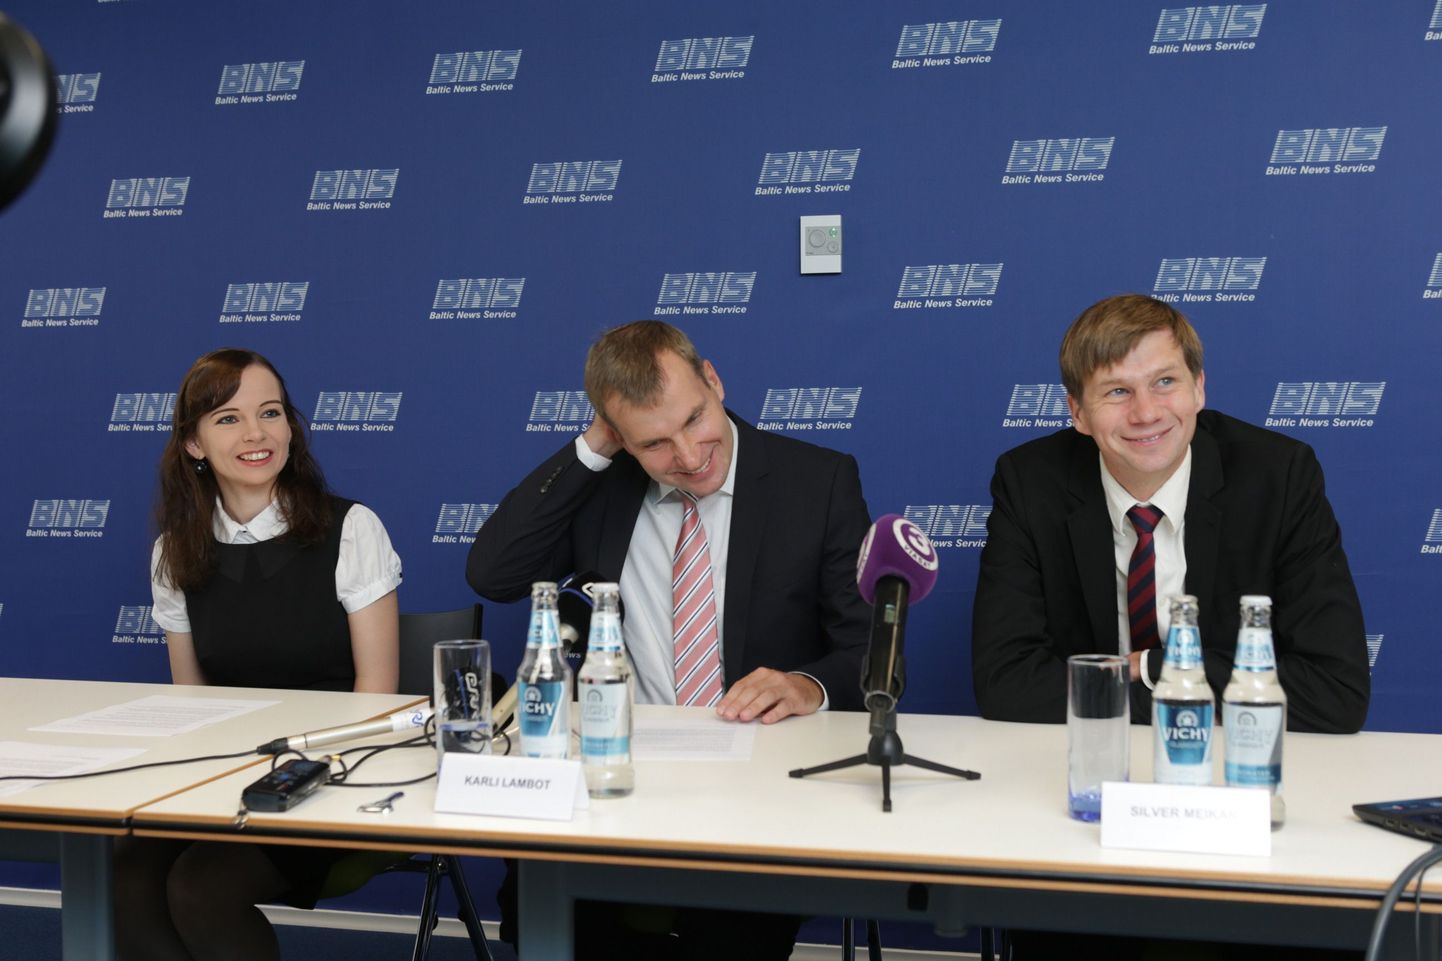 Vaba Tallinna Kodaniku kandidaadid Brit Kerbo, Karli Lambot ja Silver Meikar pressikonverentsil.